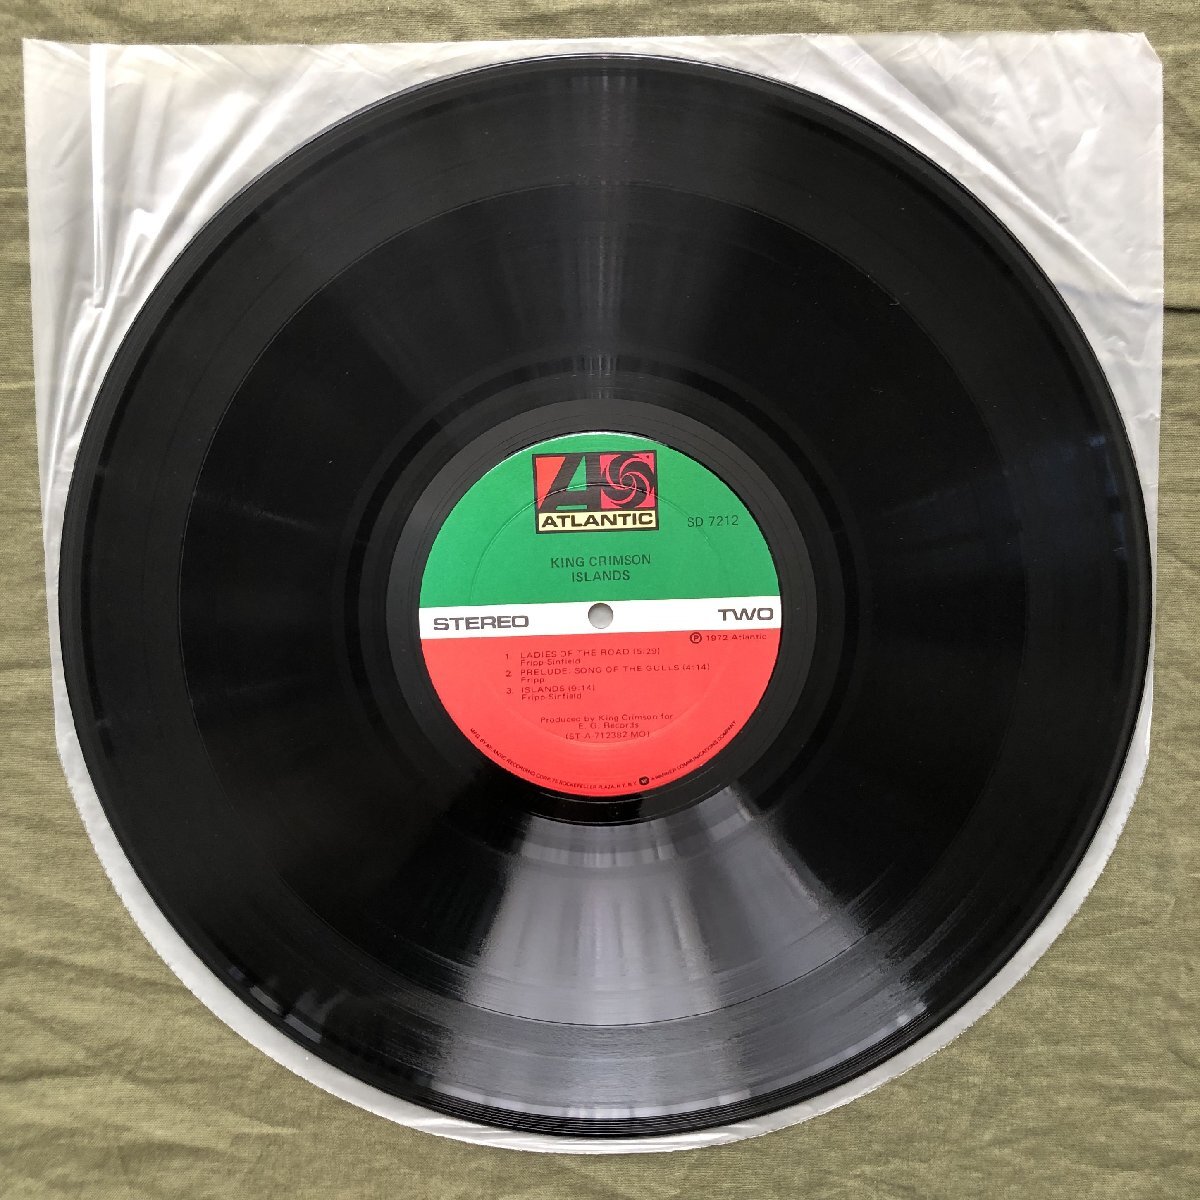  царапина нет прекрасный запись 1972 год SD 7212 американский первый запись King * Crimson King Crimson LP запись Islay nzIslands: Robert Fripp, Peter Sinfield